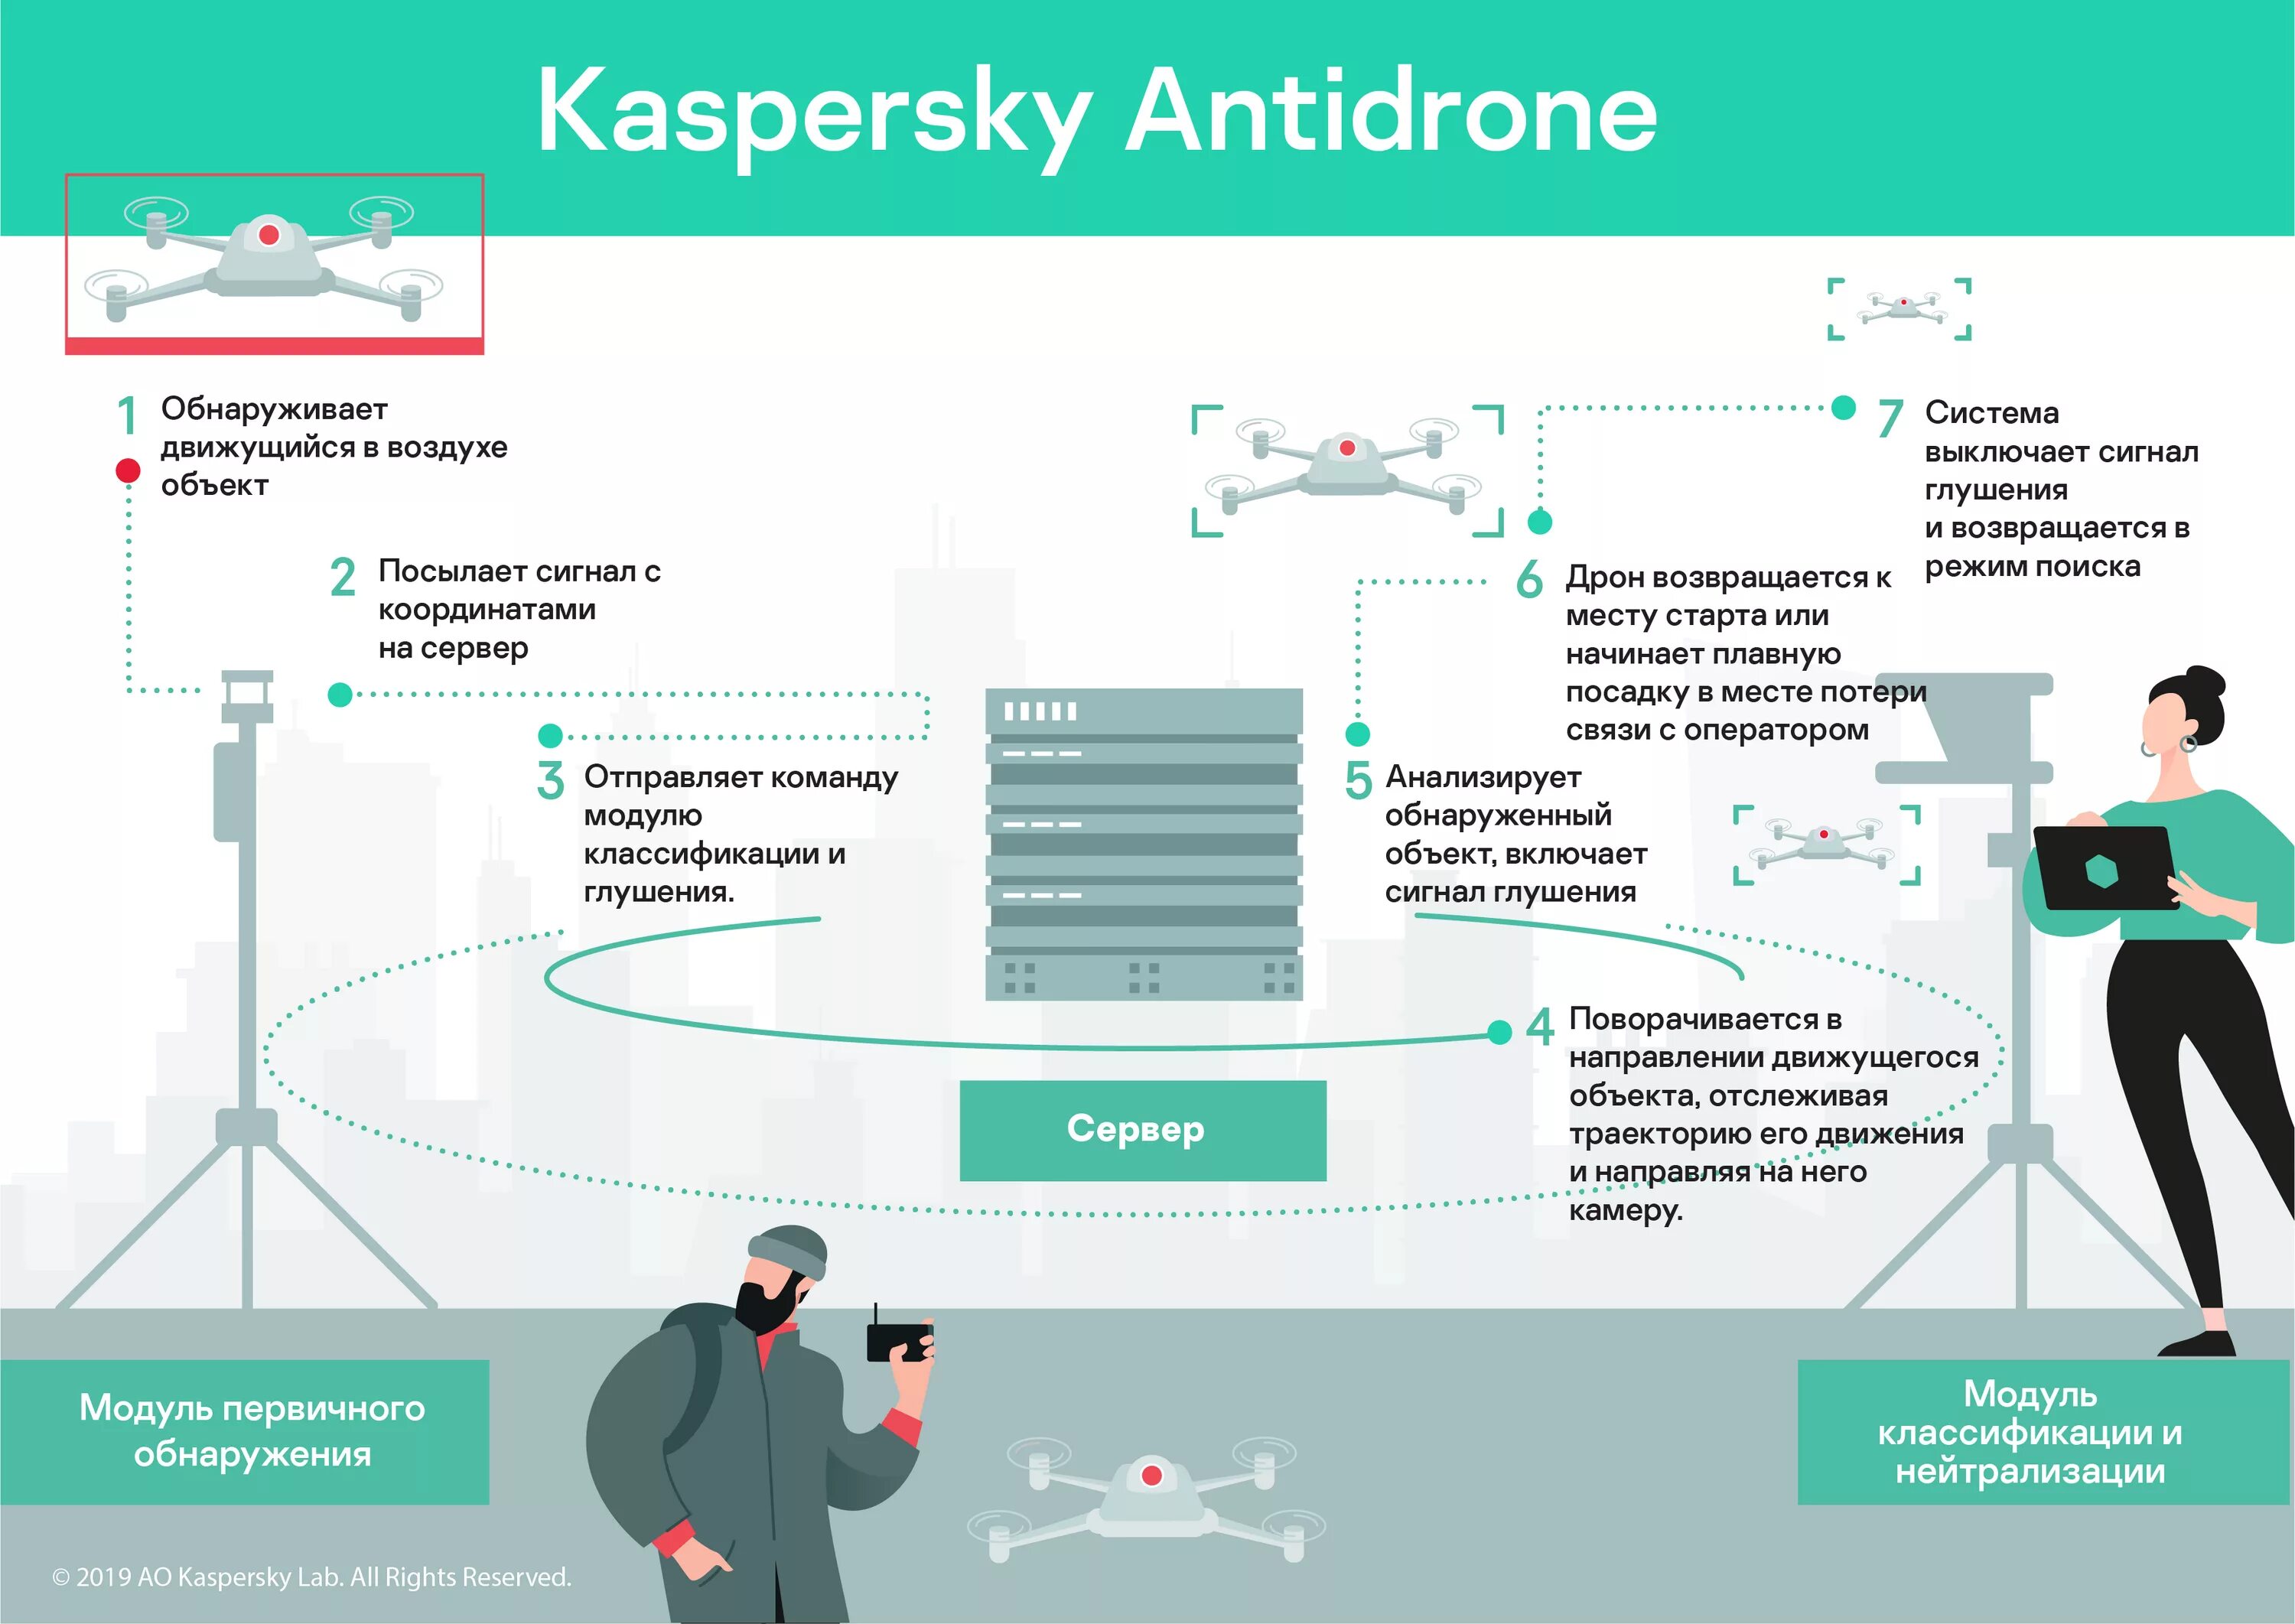 Kaspersky antidrone БПЛА. Система обнаружения от БПЛА. Обнаружение и идентификация объектов с БПЛА. Системы противодействия беспилотникам.